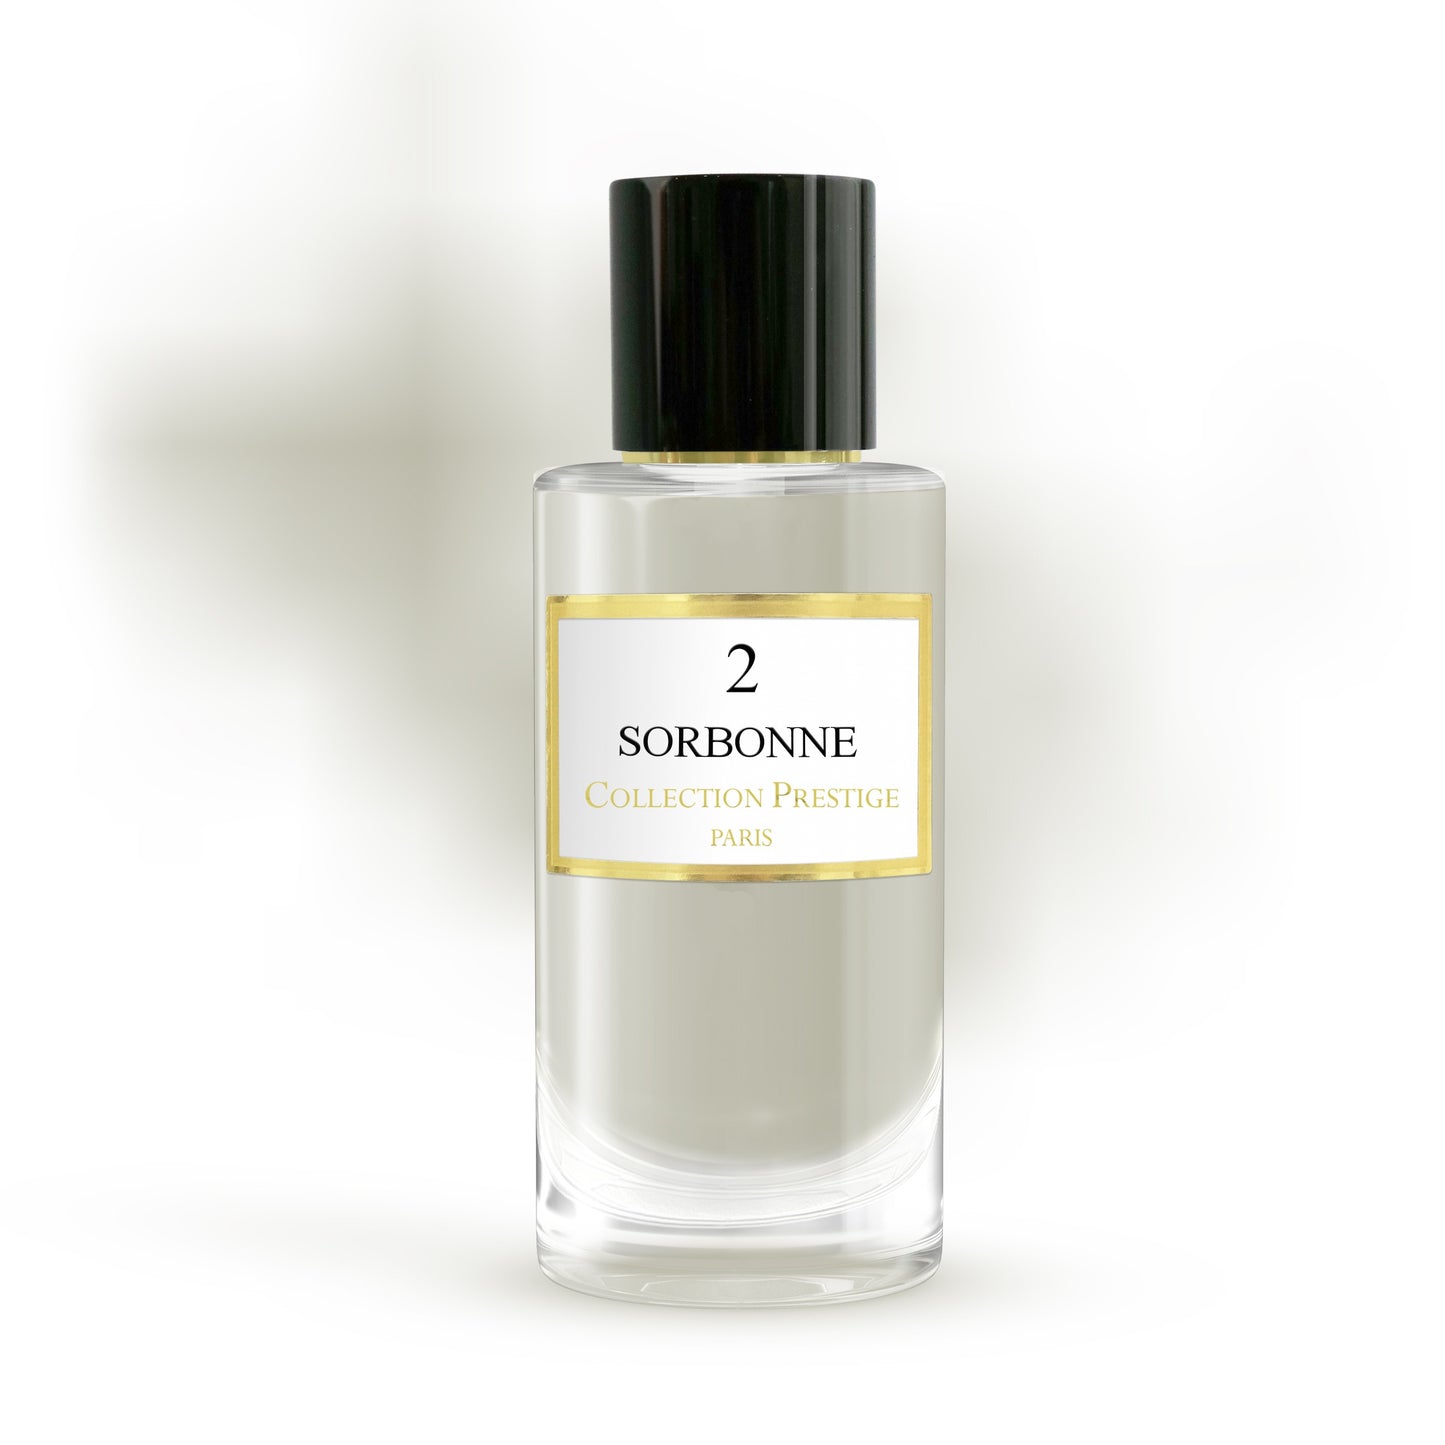 Collection Prestige - Sorbonne - Eau de Parfum Mixte